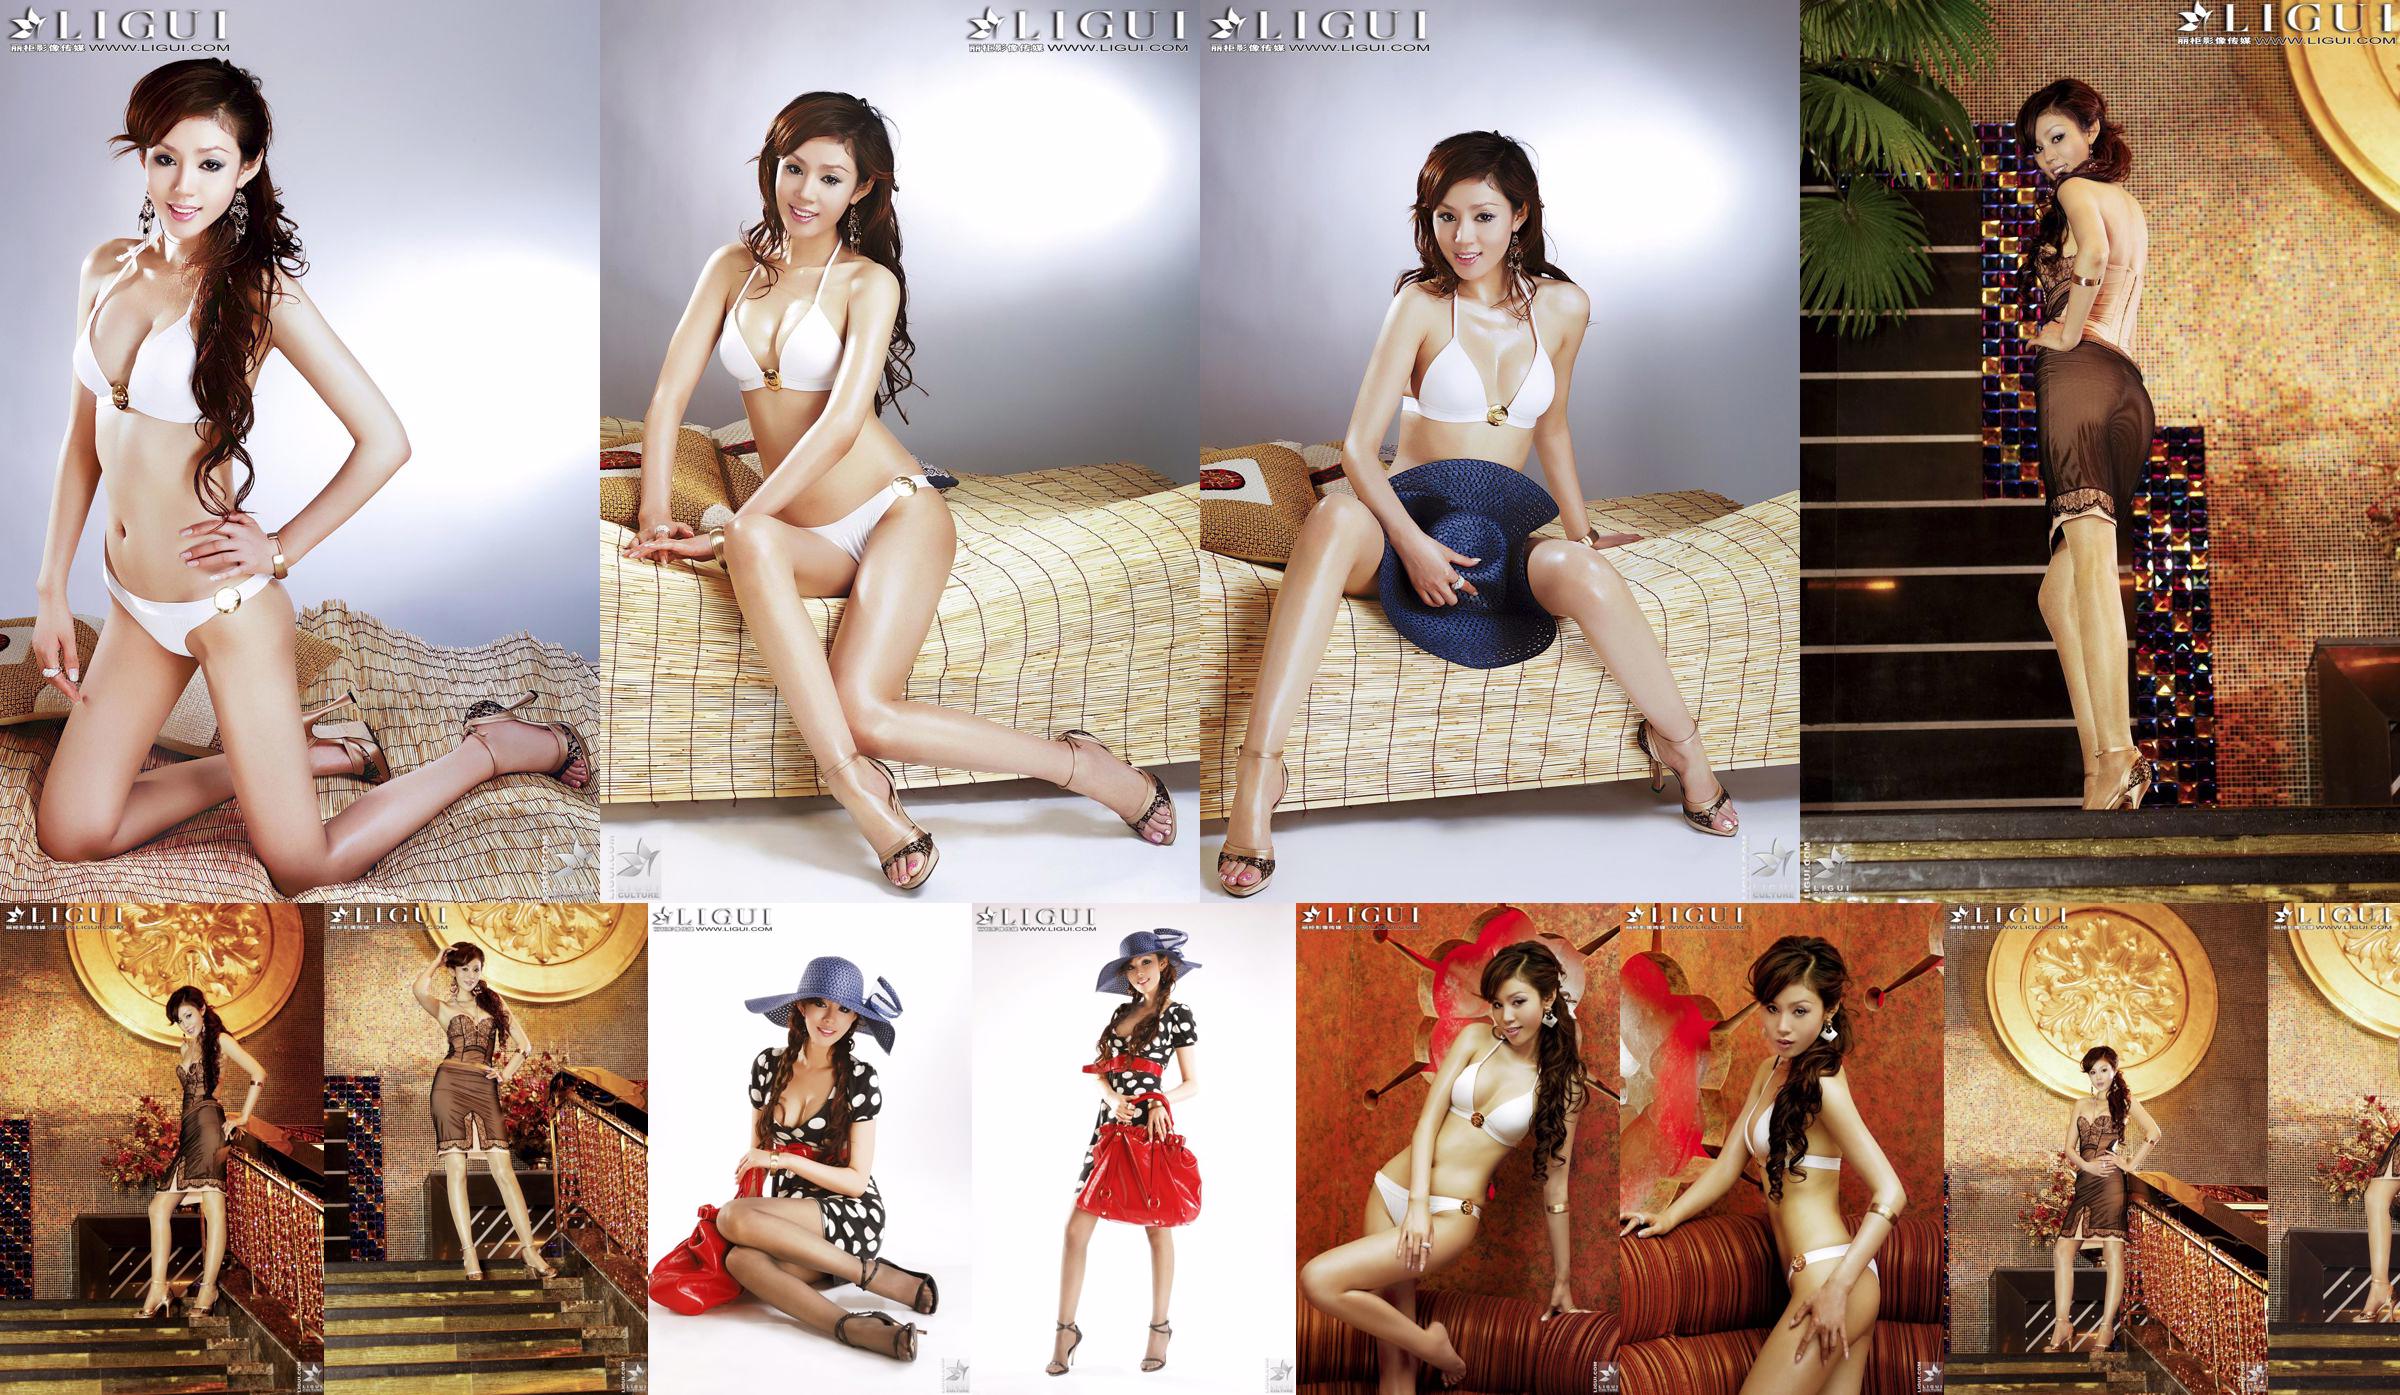 [丽 柜 LiGui] "Bikini + Robe" du modèle Yao Jinjin, belles jambes et pieds soyeux Photo Picture No.41f750 Page 15